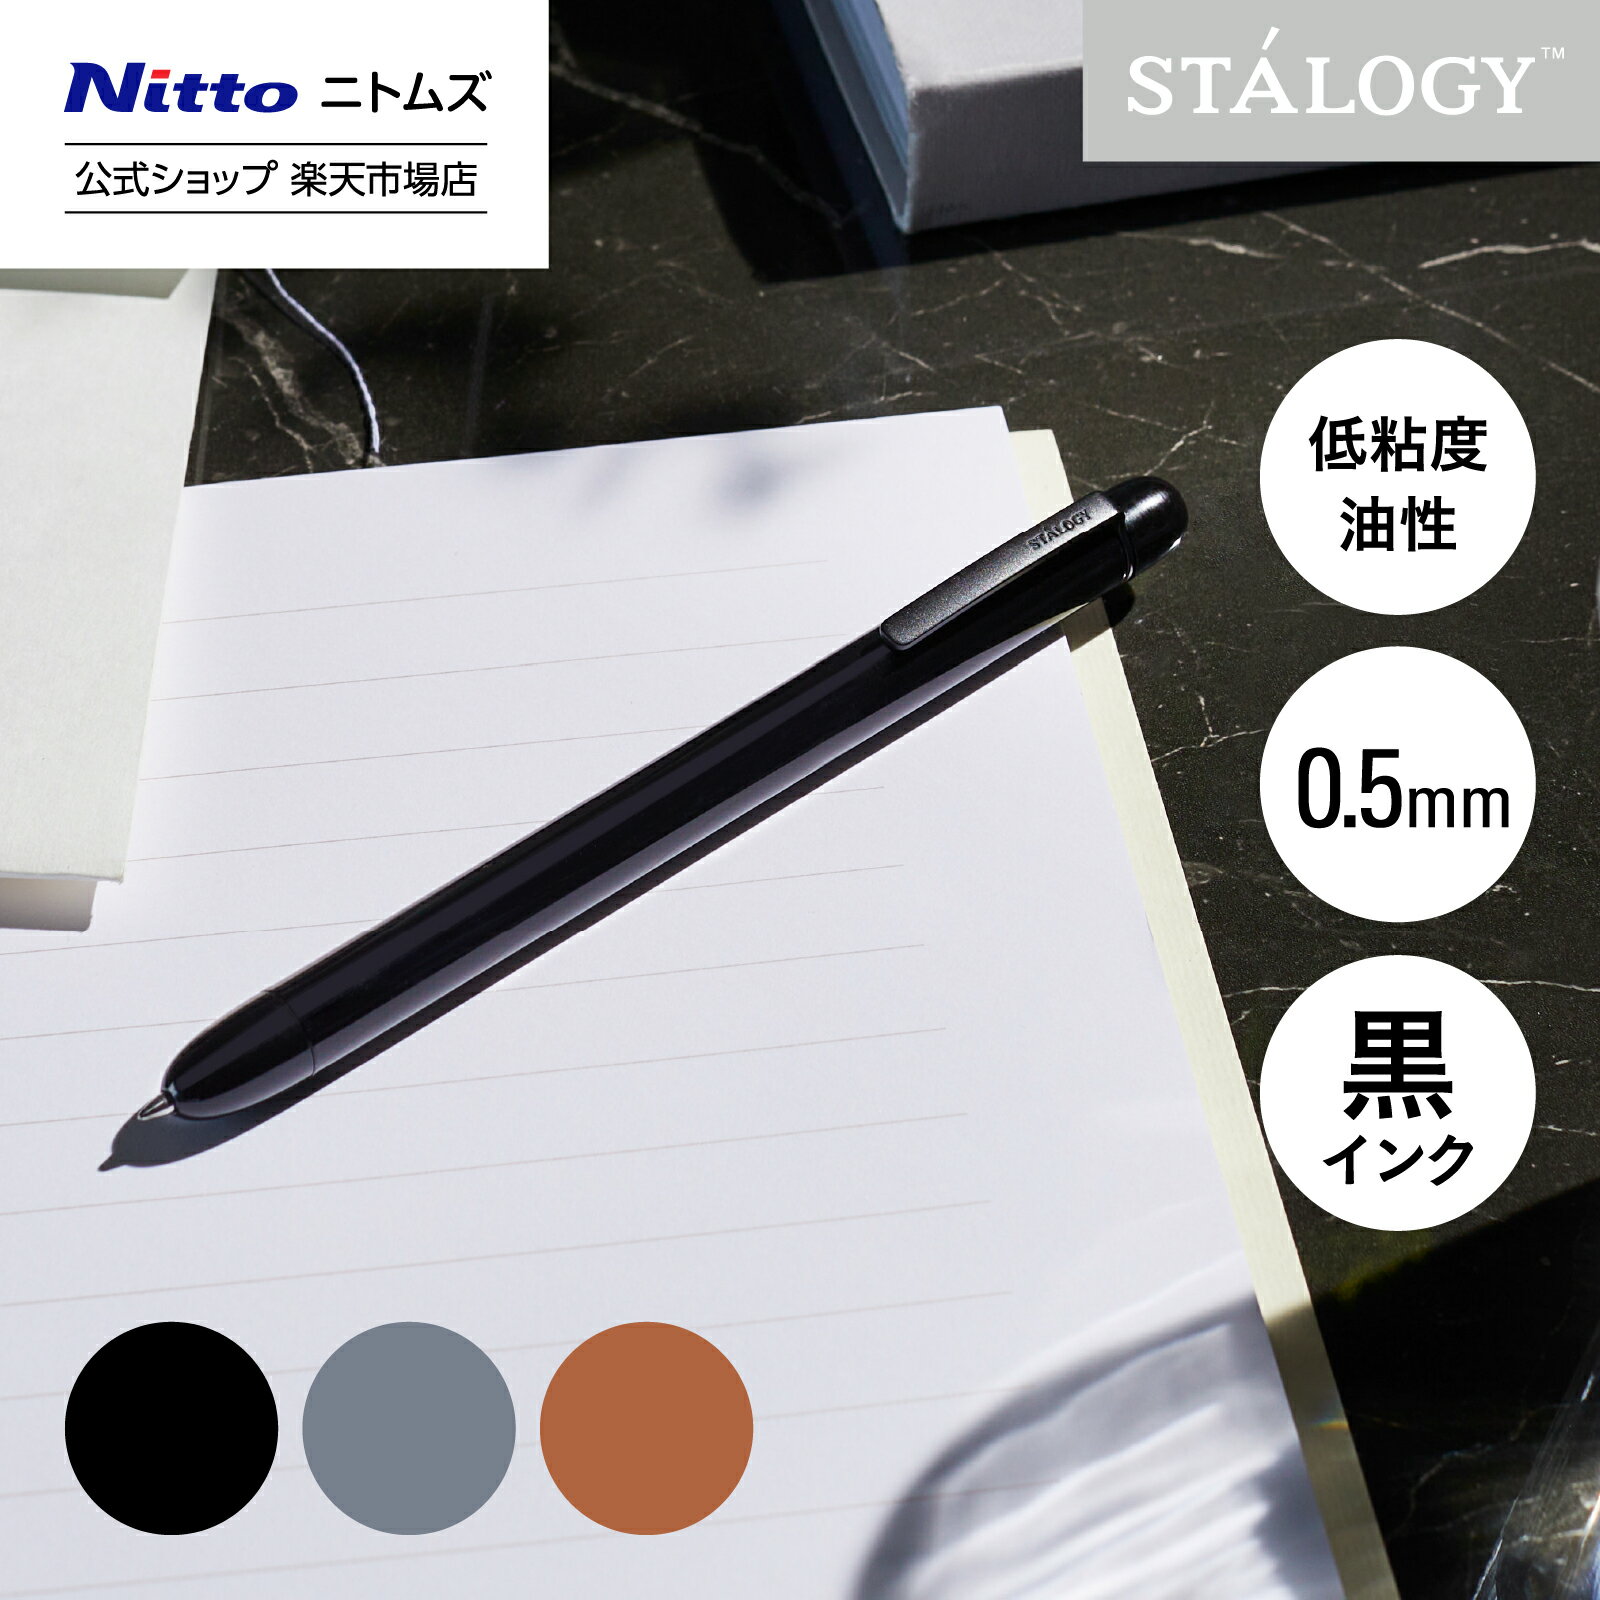 新商品 【公式】 ニトムズ STALOGY 低粘度油性ボールペン クラシック 0.5mm ブラック グレー キャメル |